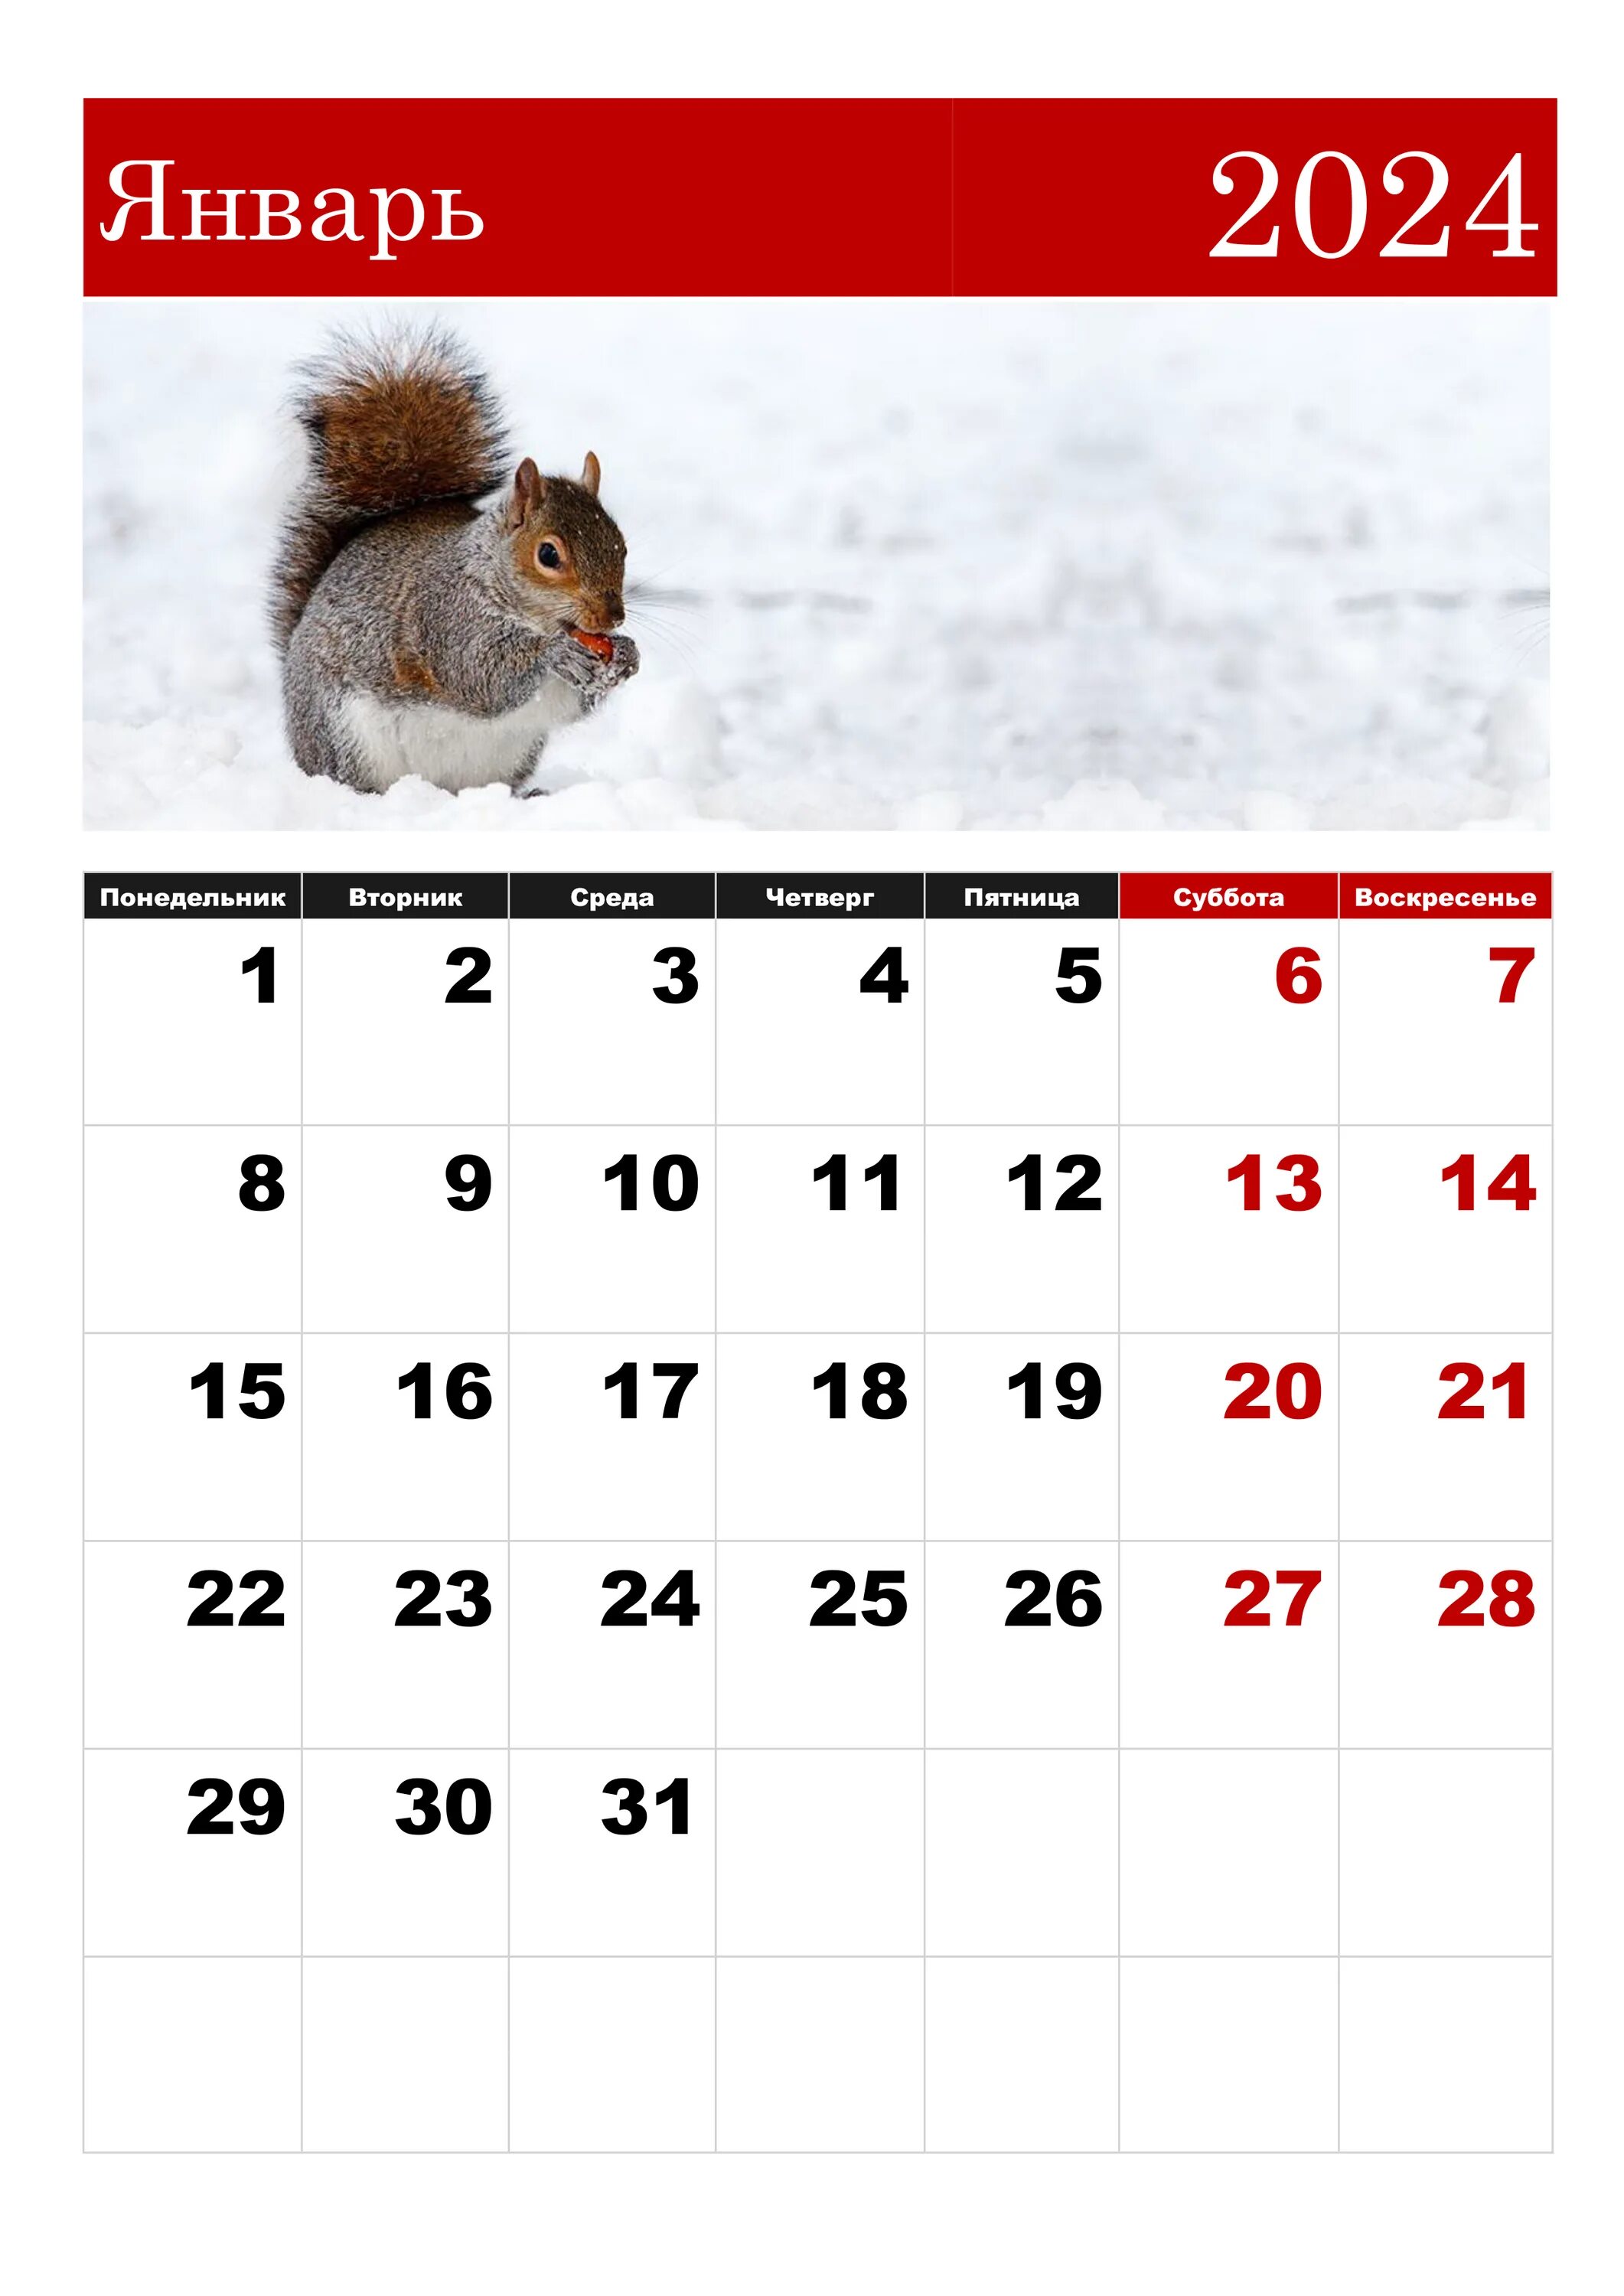 Игры месяца февраль 2024. Календарная январь 2024. ЯНВАРЬРЬ 2024. Календарь январь. Календарь на январь 2024 года.